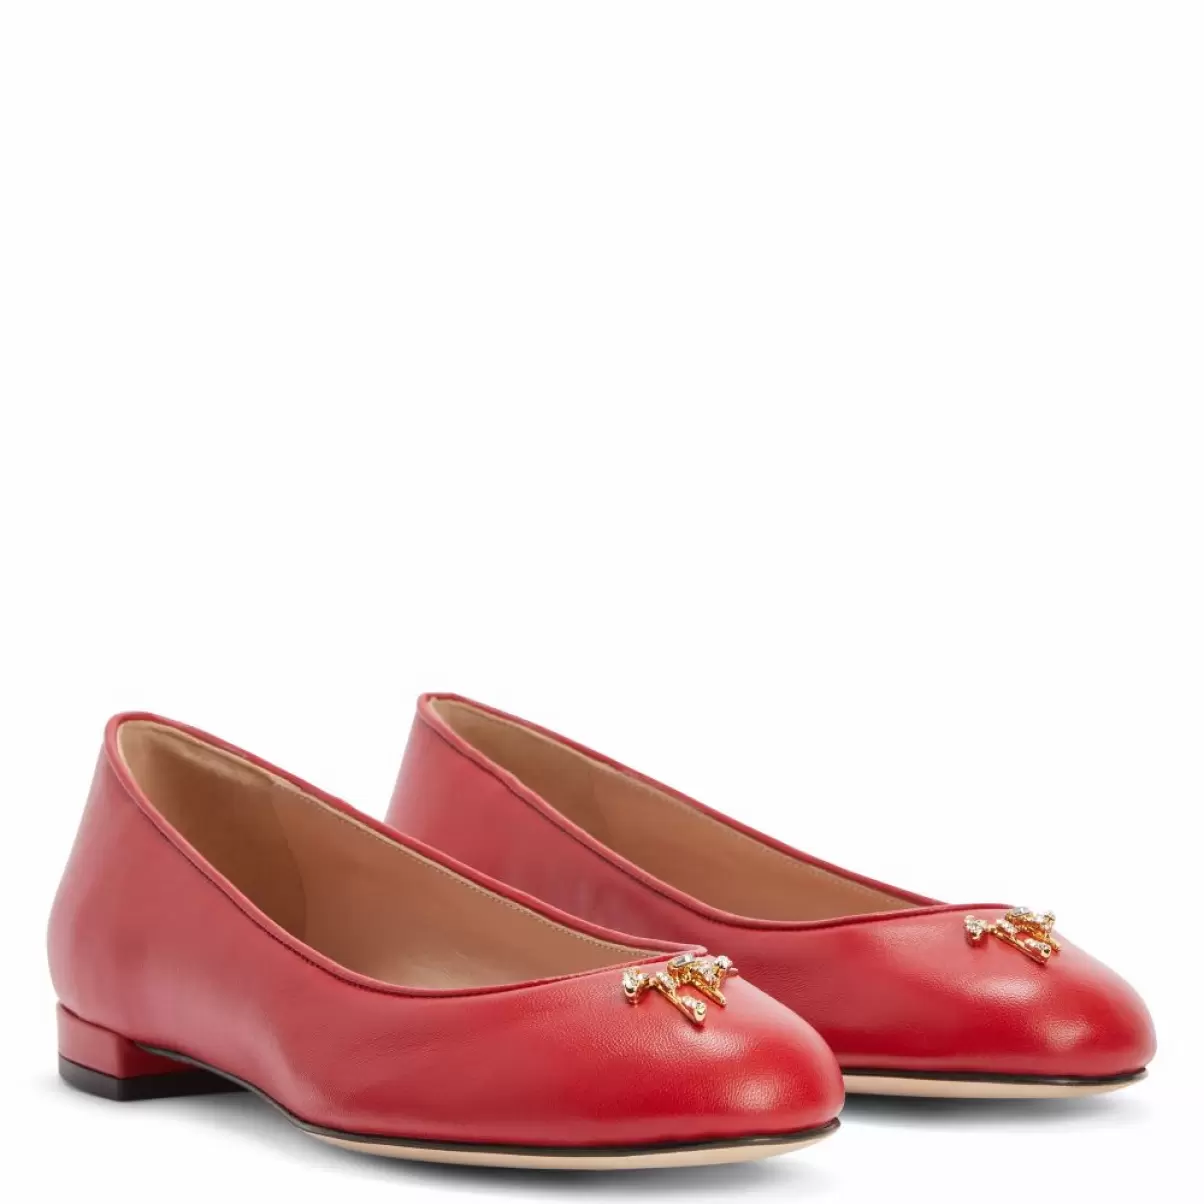 Riziana Mujer Zapatos Planos Giuseppe Zanotti Rojo - 2